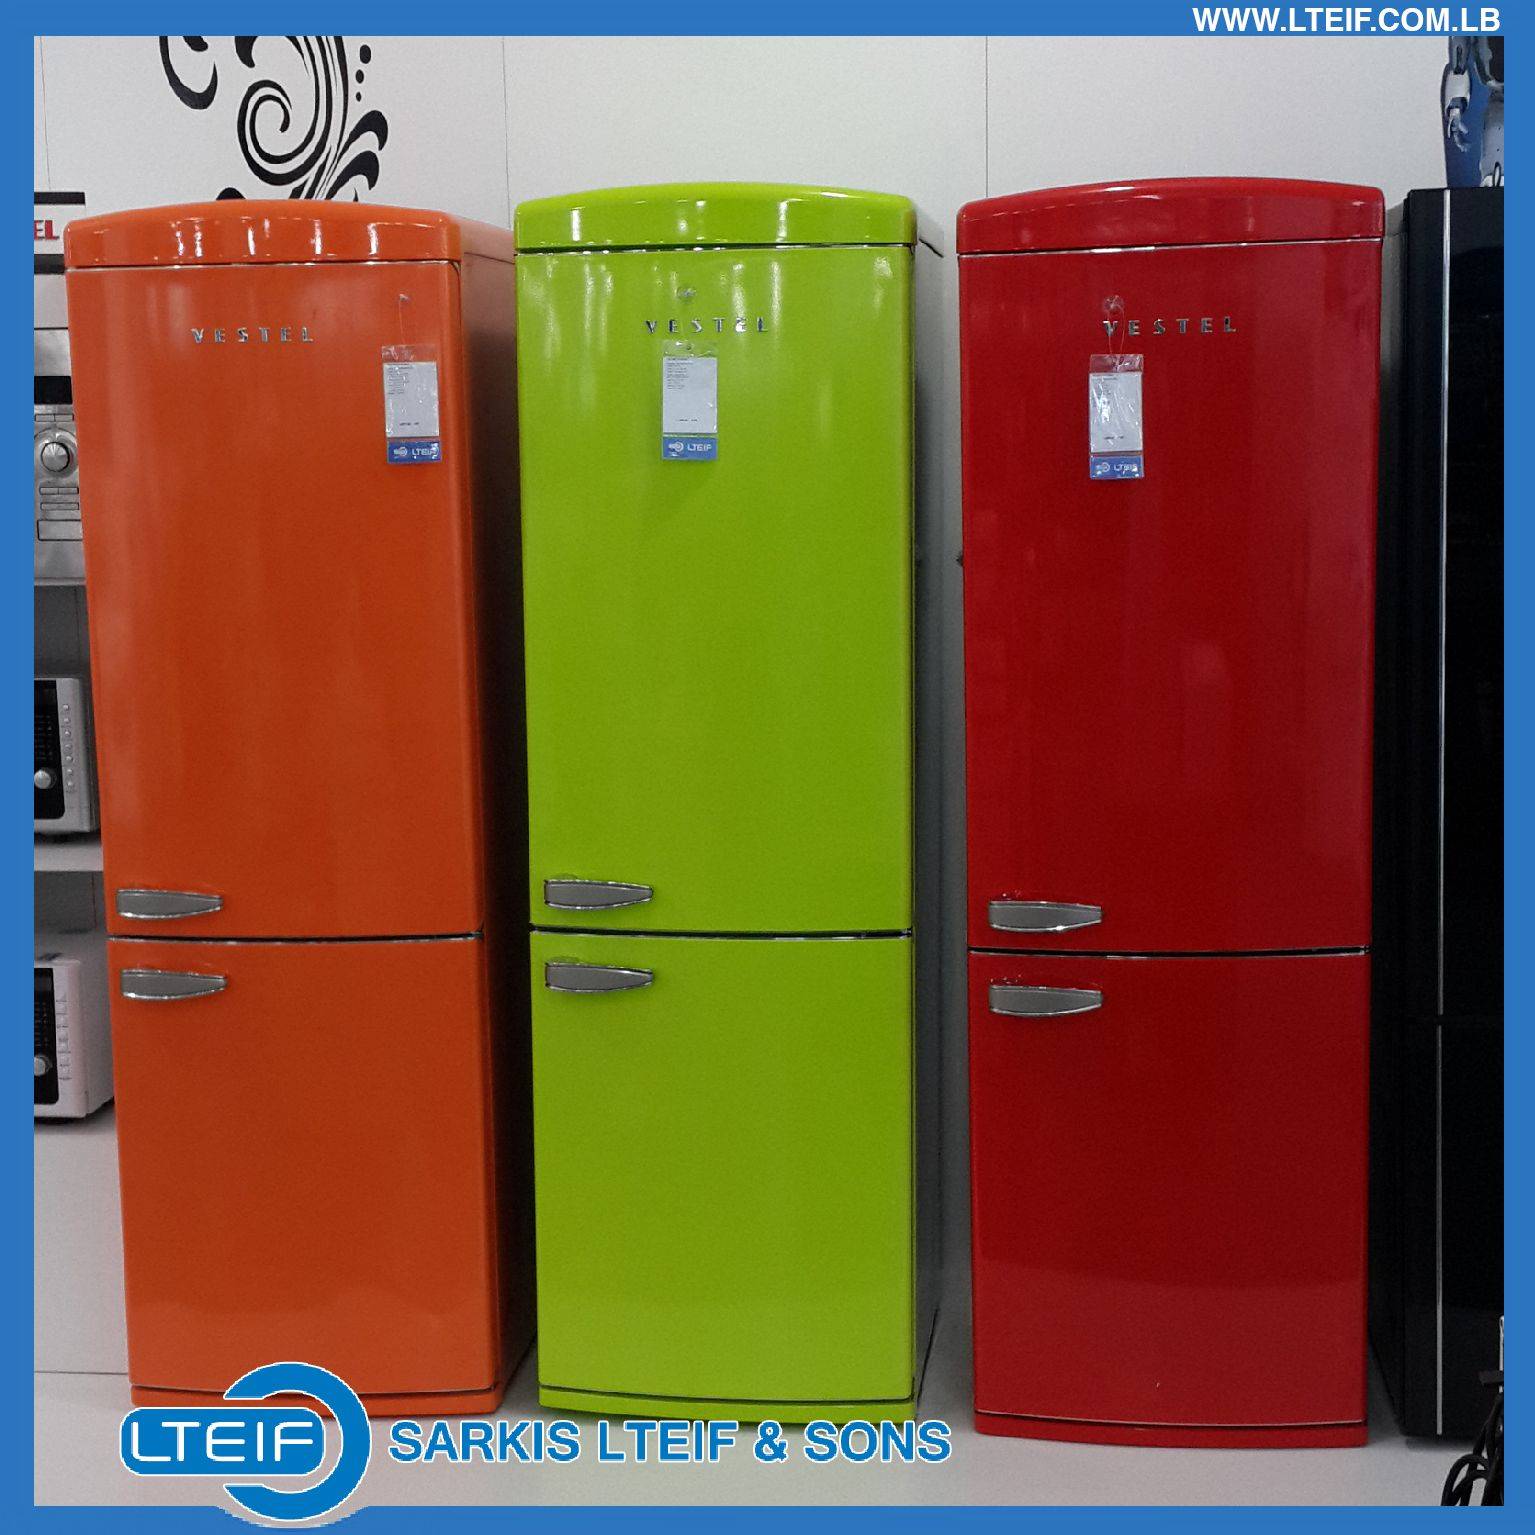 Цветные холодильники: серебристые и золотые модели разных брендов